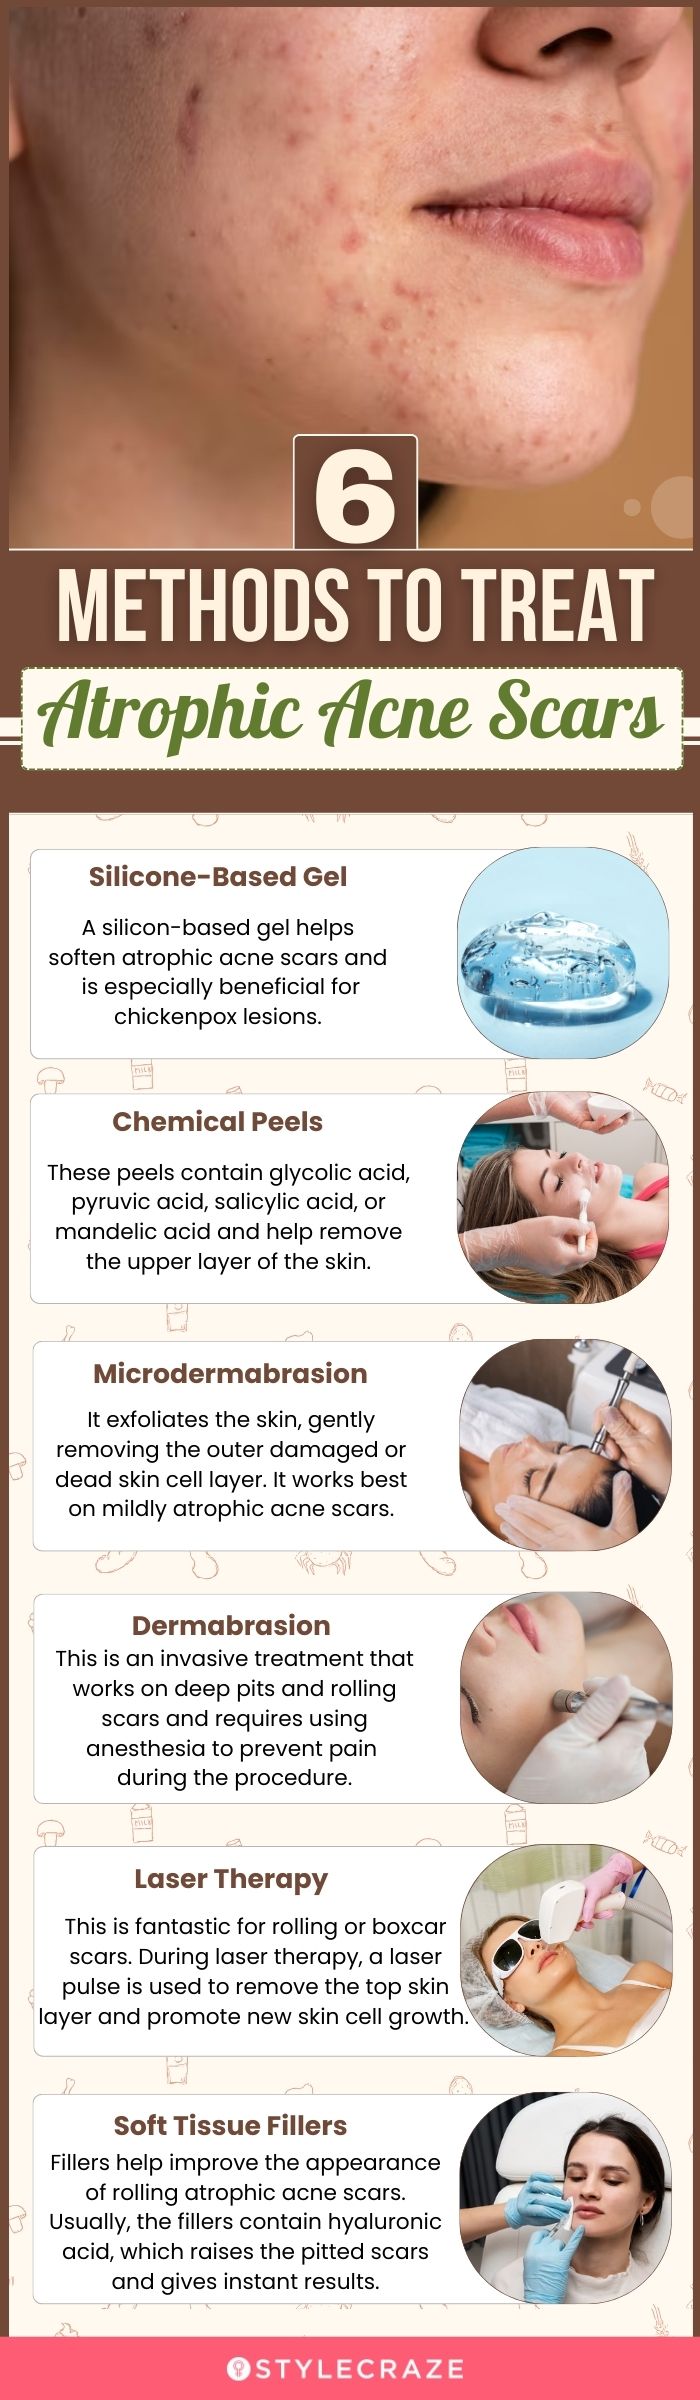 6 methods to treat atrophic acne scars (infographic)